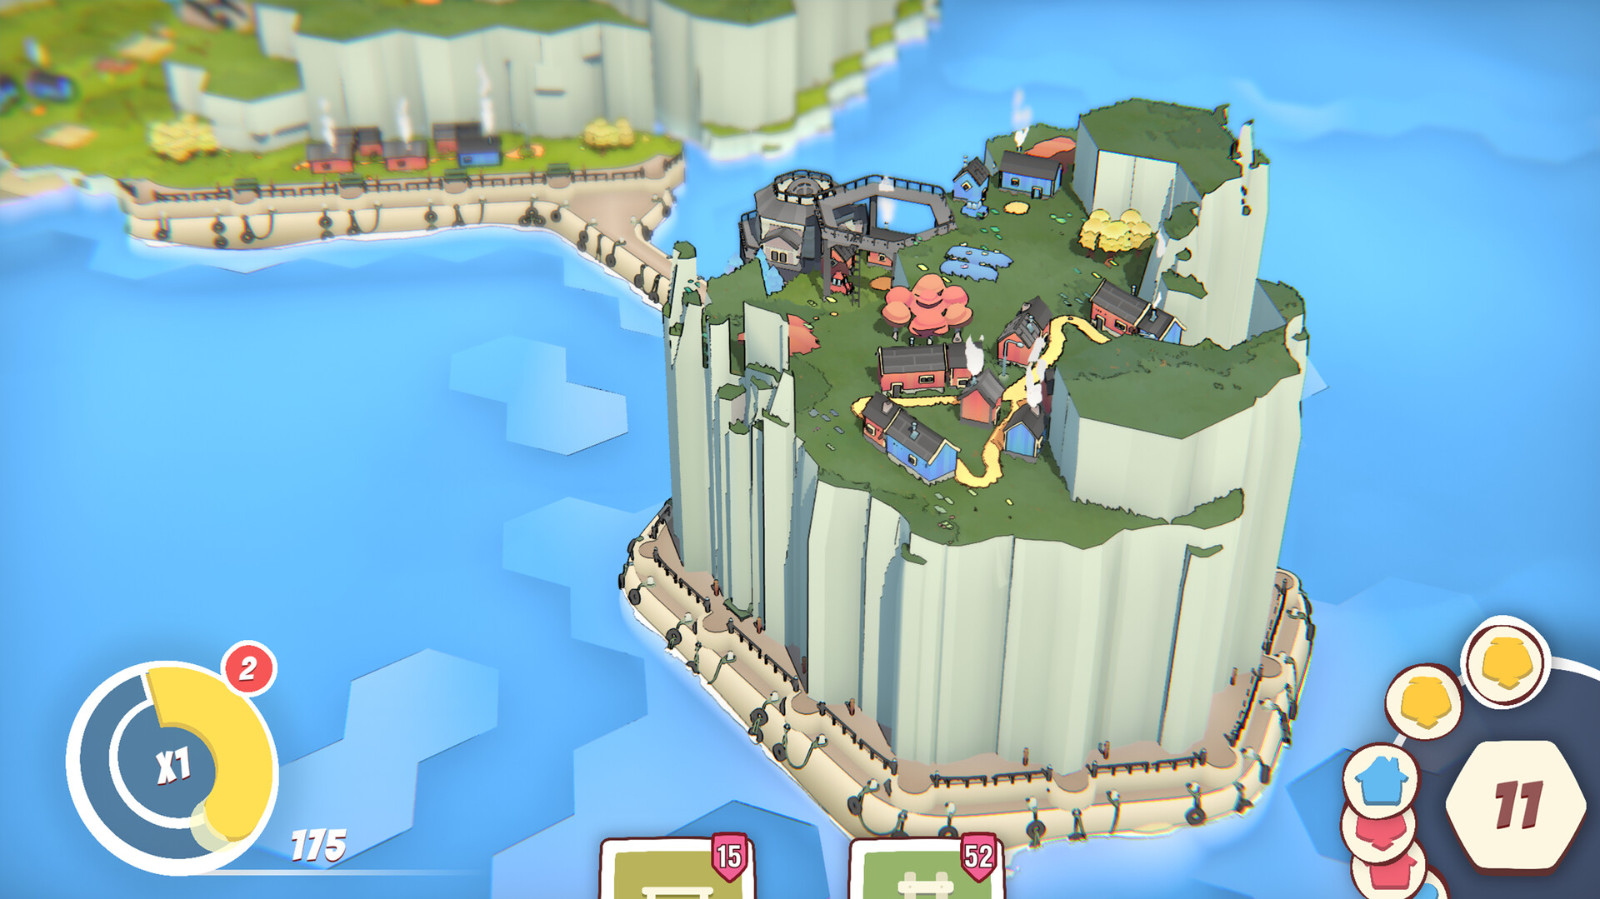 建筑策略游戏《Tiny Atolls》Steam页面上线 明年发售